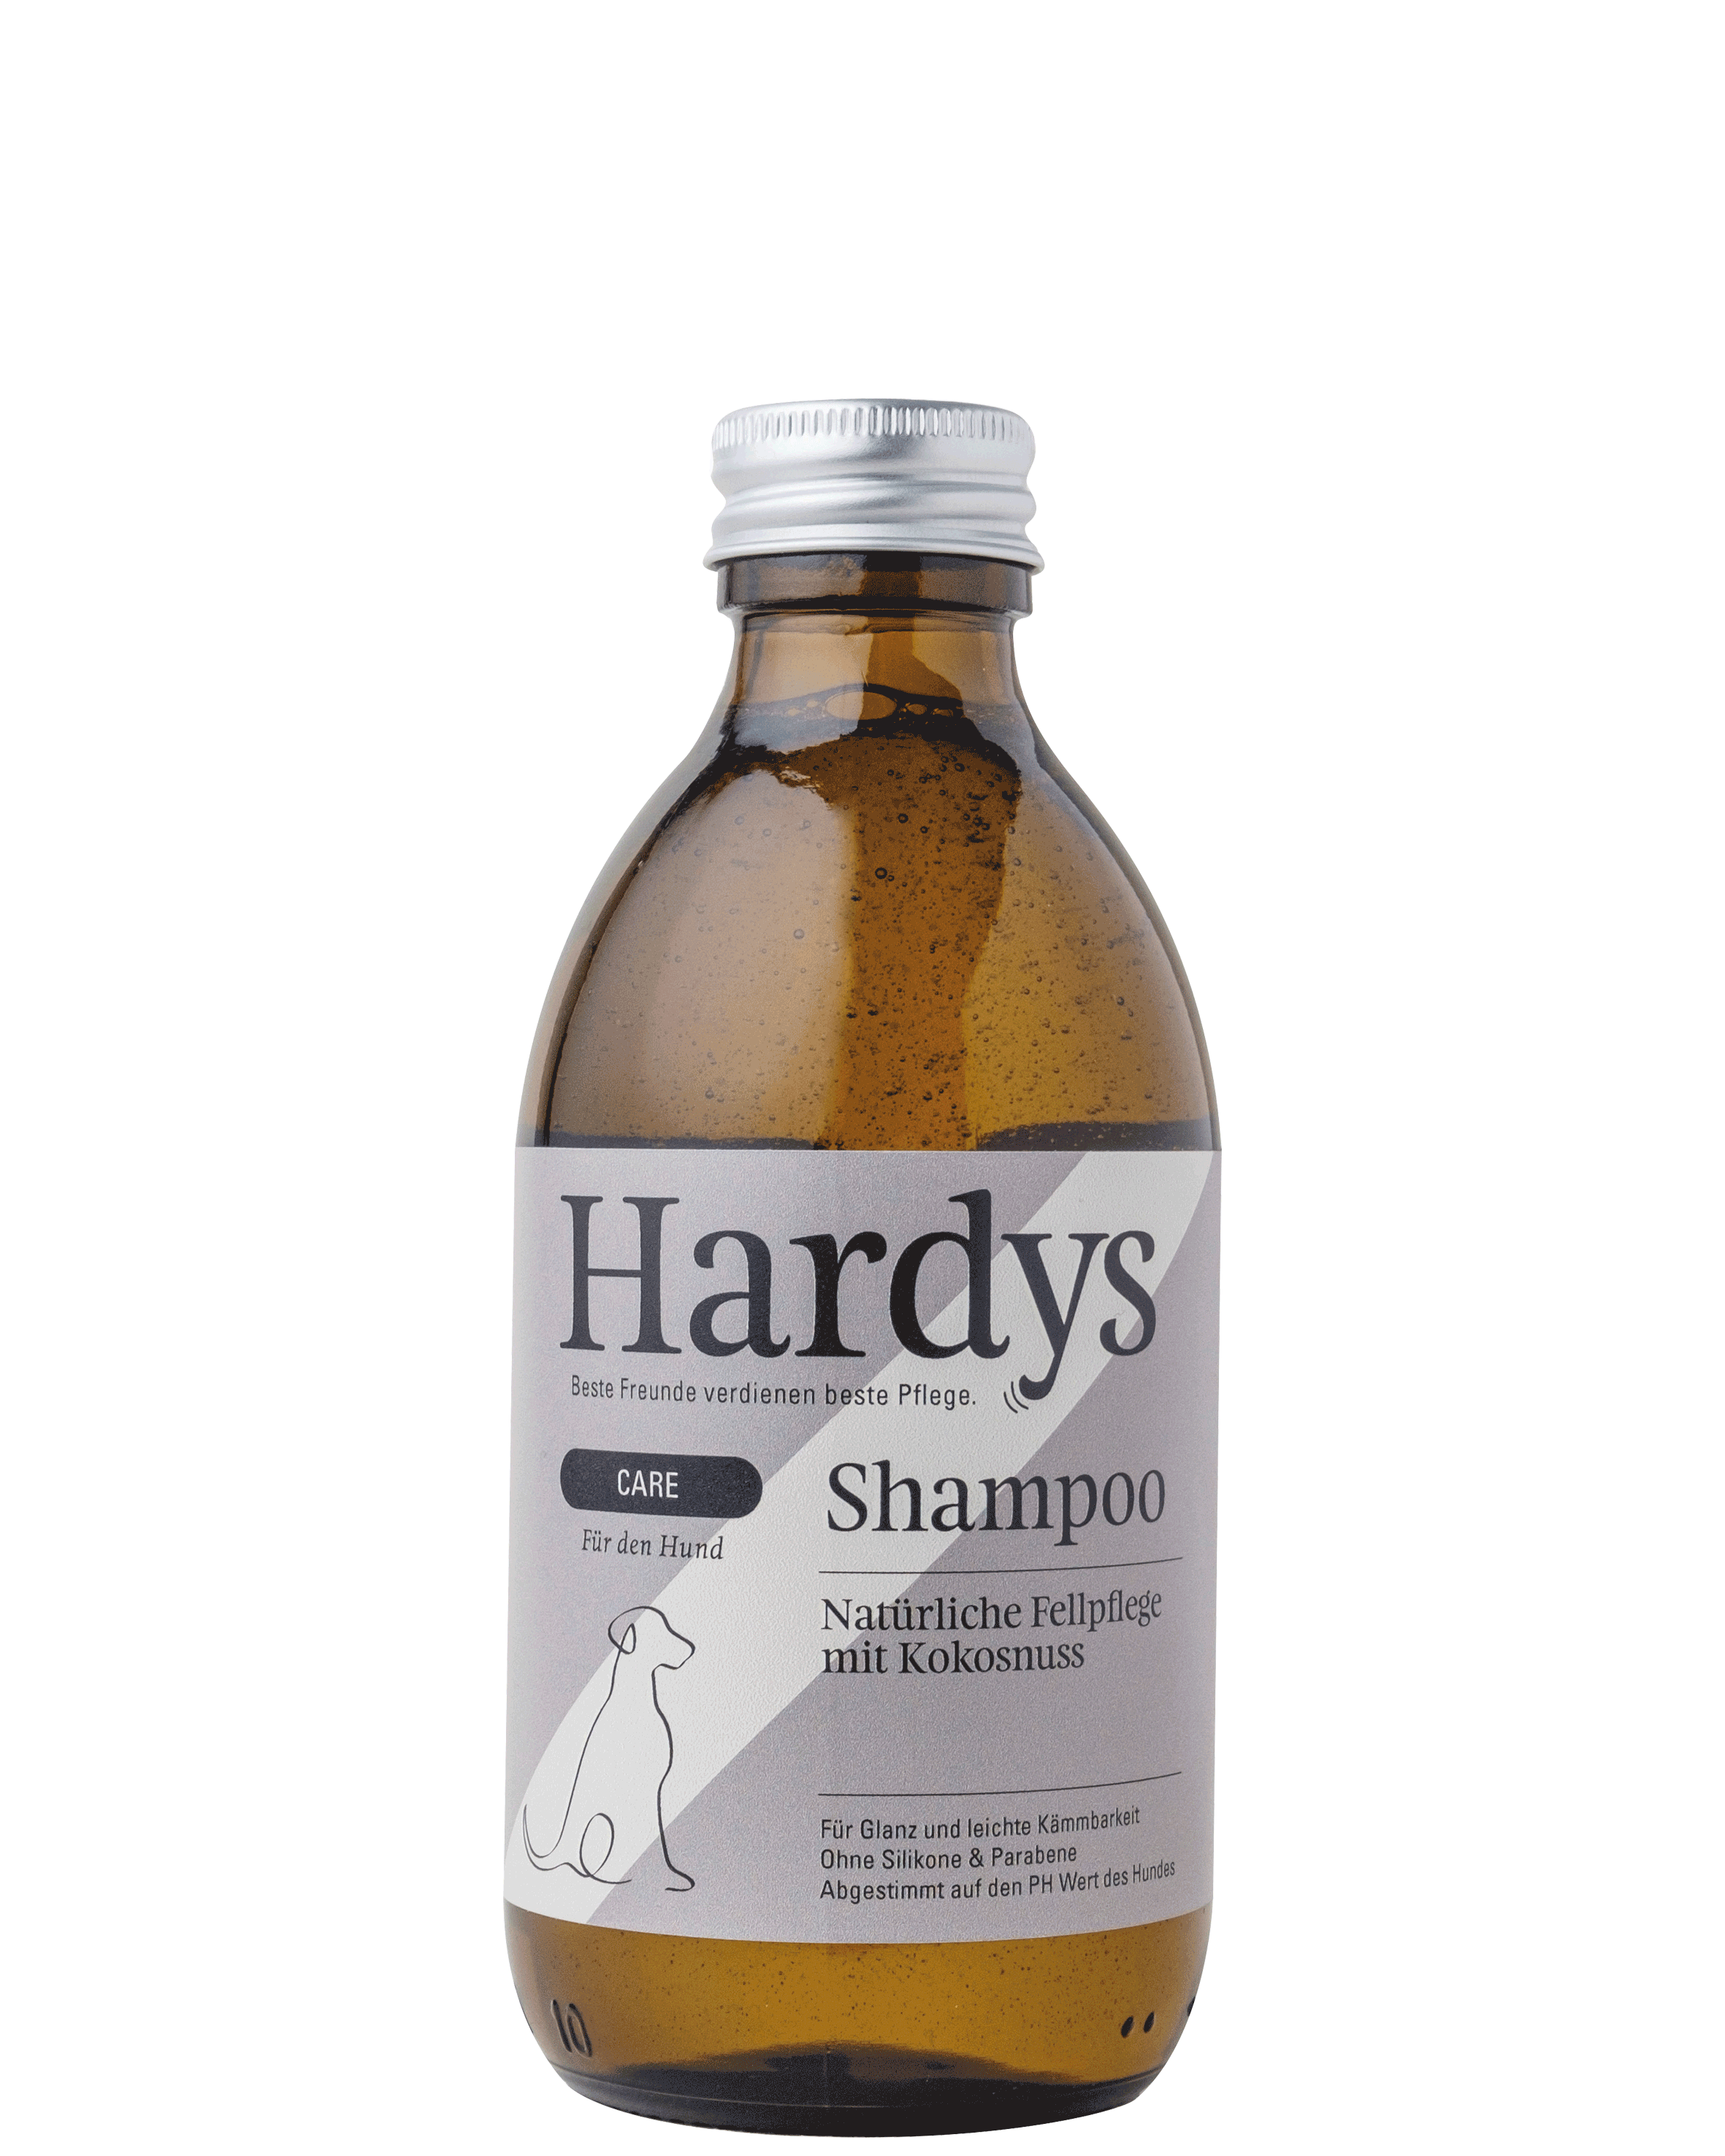 Hardys Care Shampoo mit Kokosnuss, 250 ml